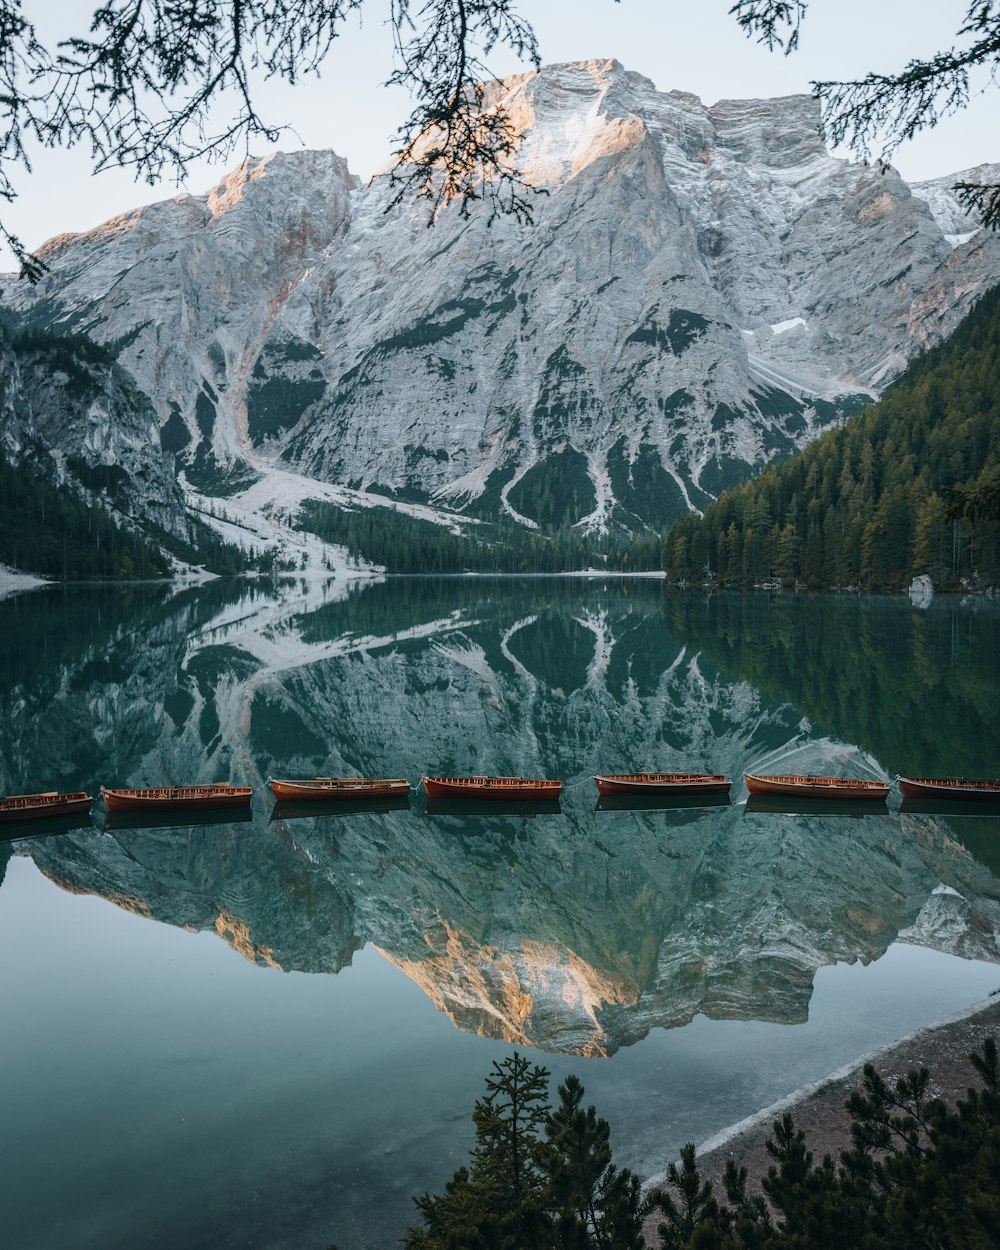 Pontile di legno marrone sul lago vicino alla montagna coperta di neve